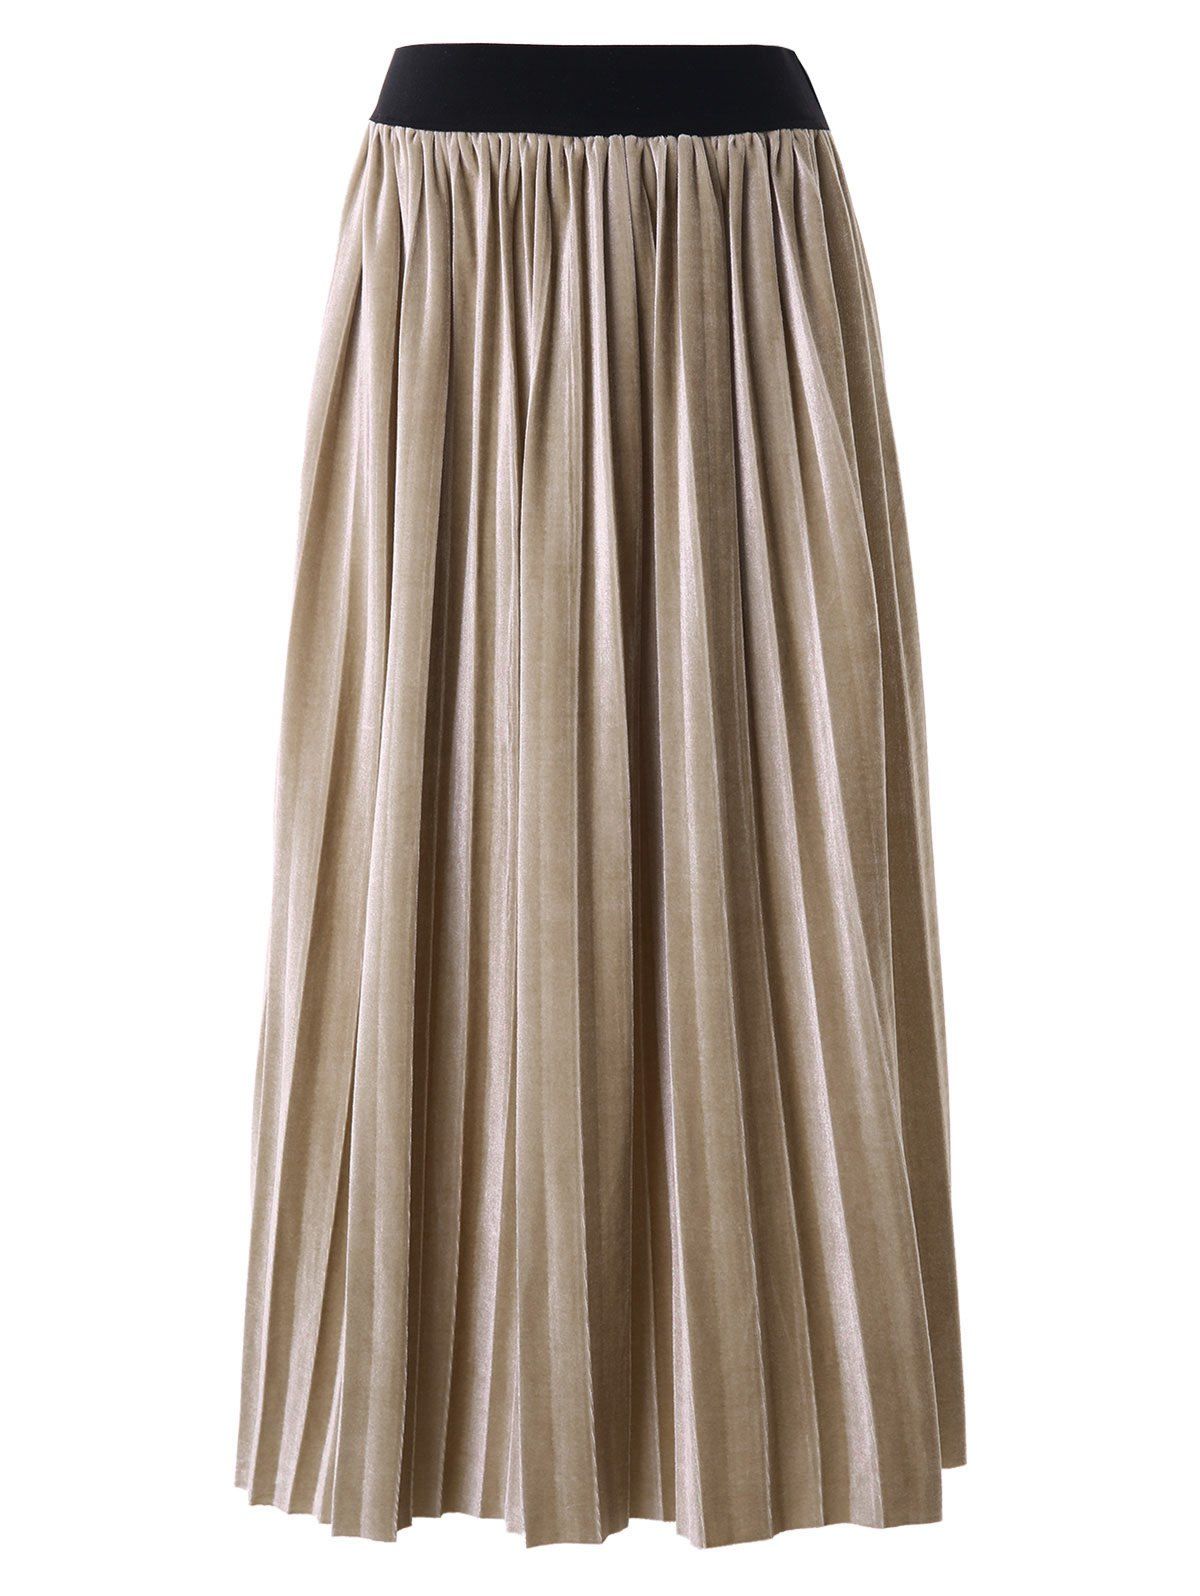 High Waist Velvet Pleated Skirt - LIGHT KHAKI L